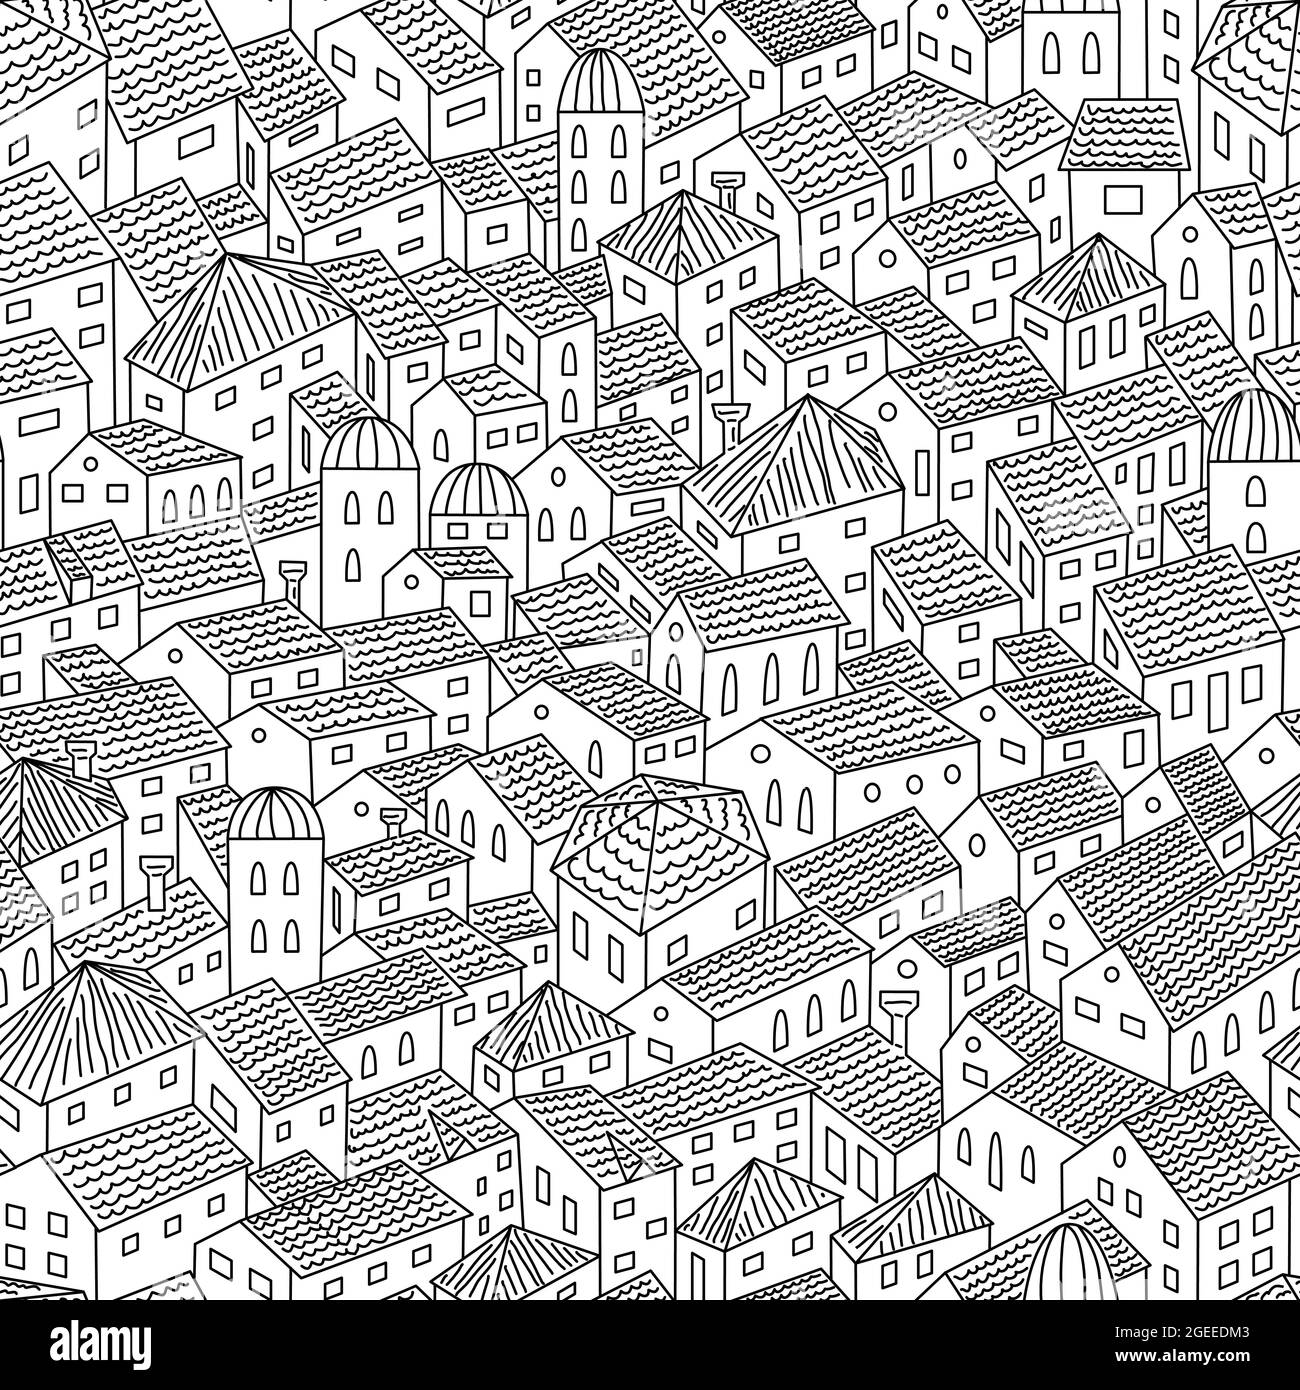 Tegole città vecchia tetti contorno vista dall'alto motivo senza cuciture, stile doodle vecchie case disegnate a mano e torri della città profilo vettoriale illustrazione Illustrazione Vettoriale